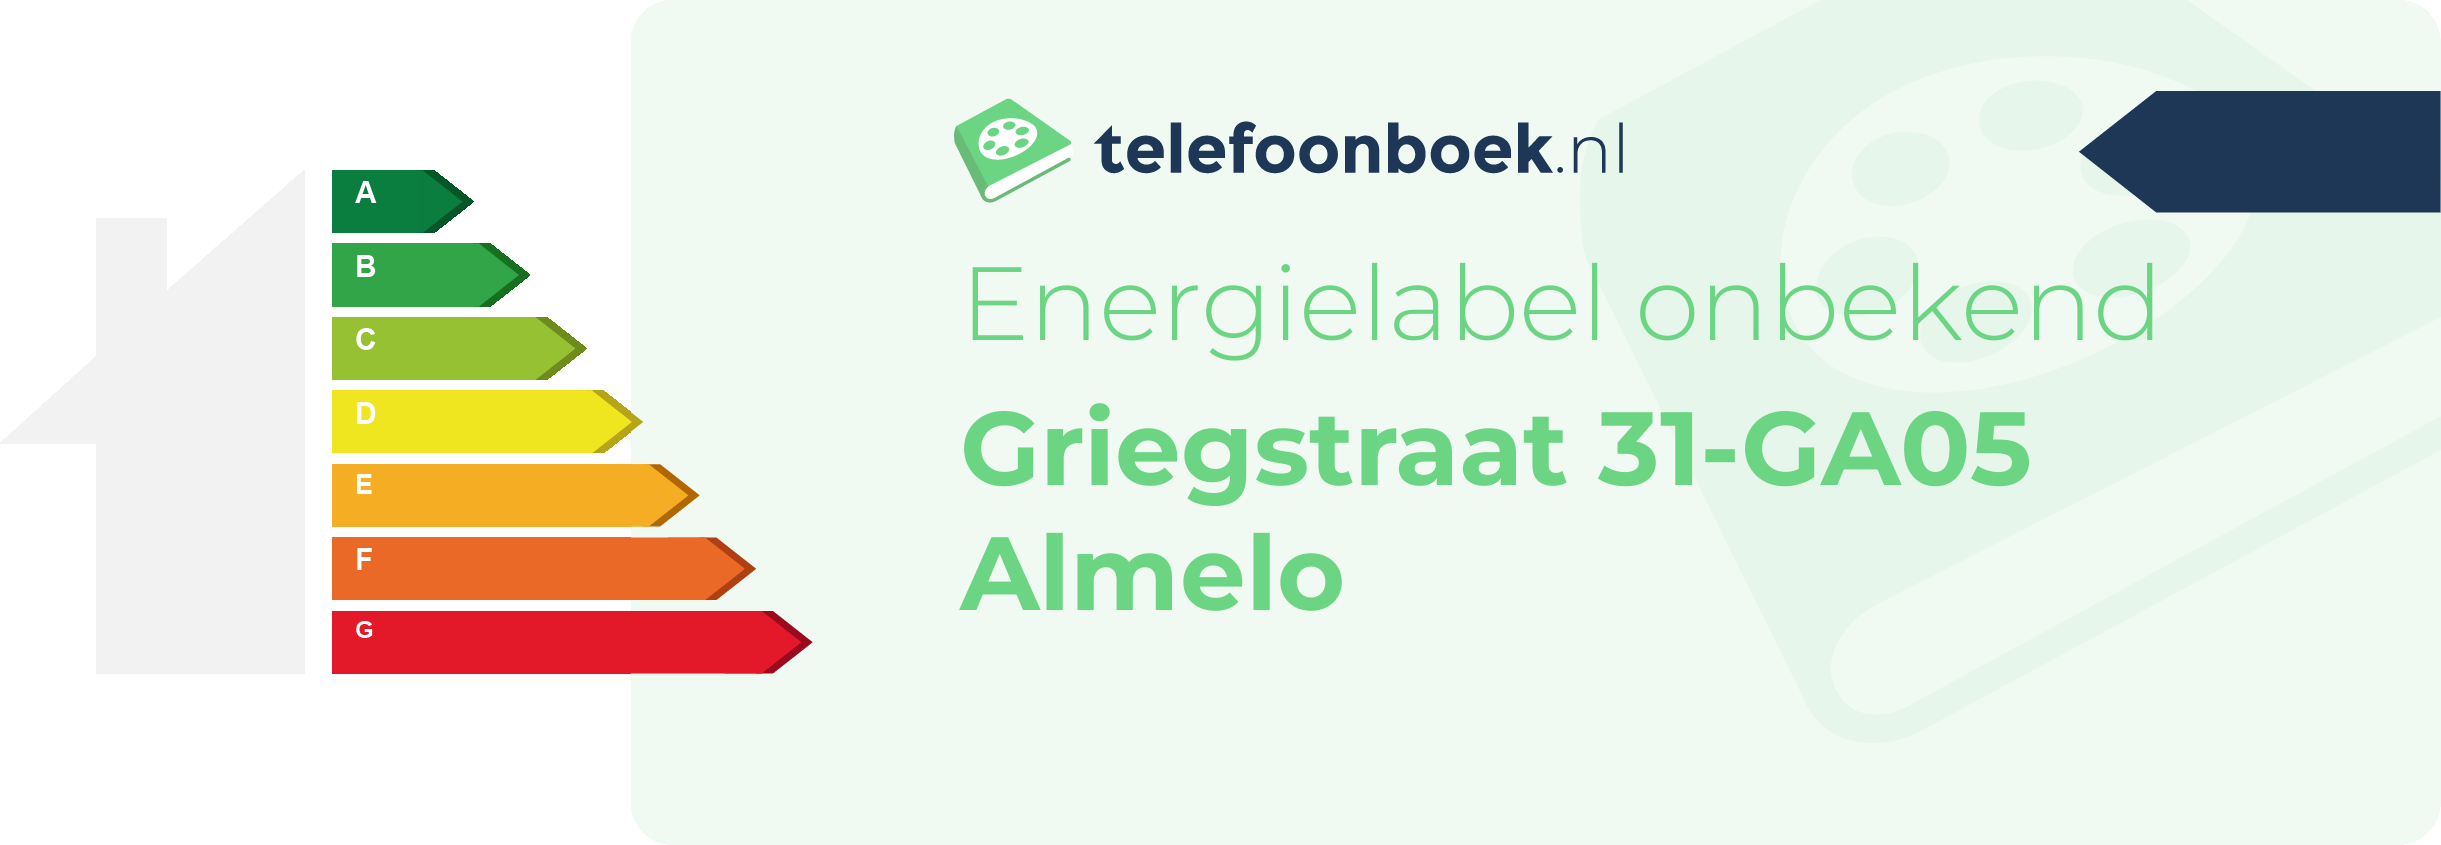 Energielabel Griegstraat 31-GA05 Almelo